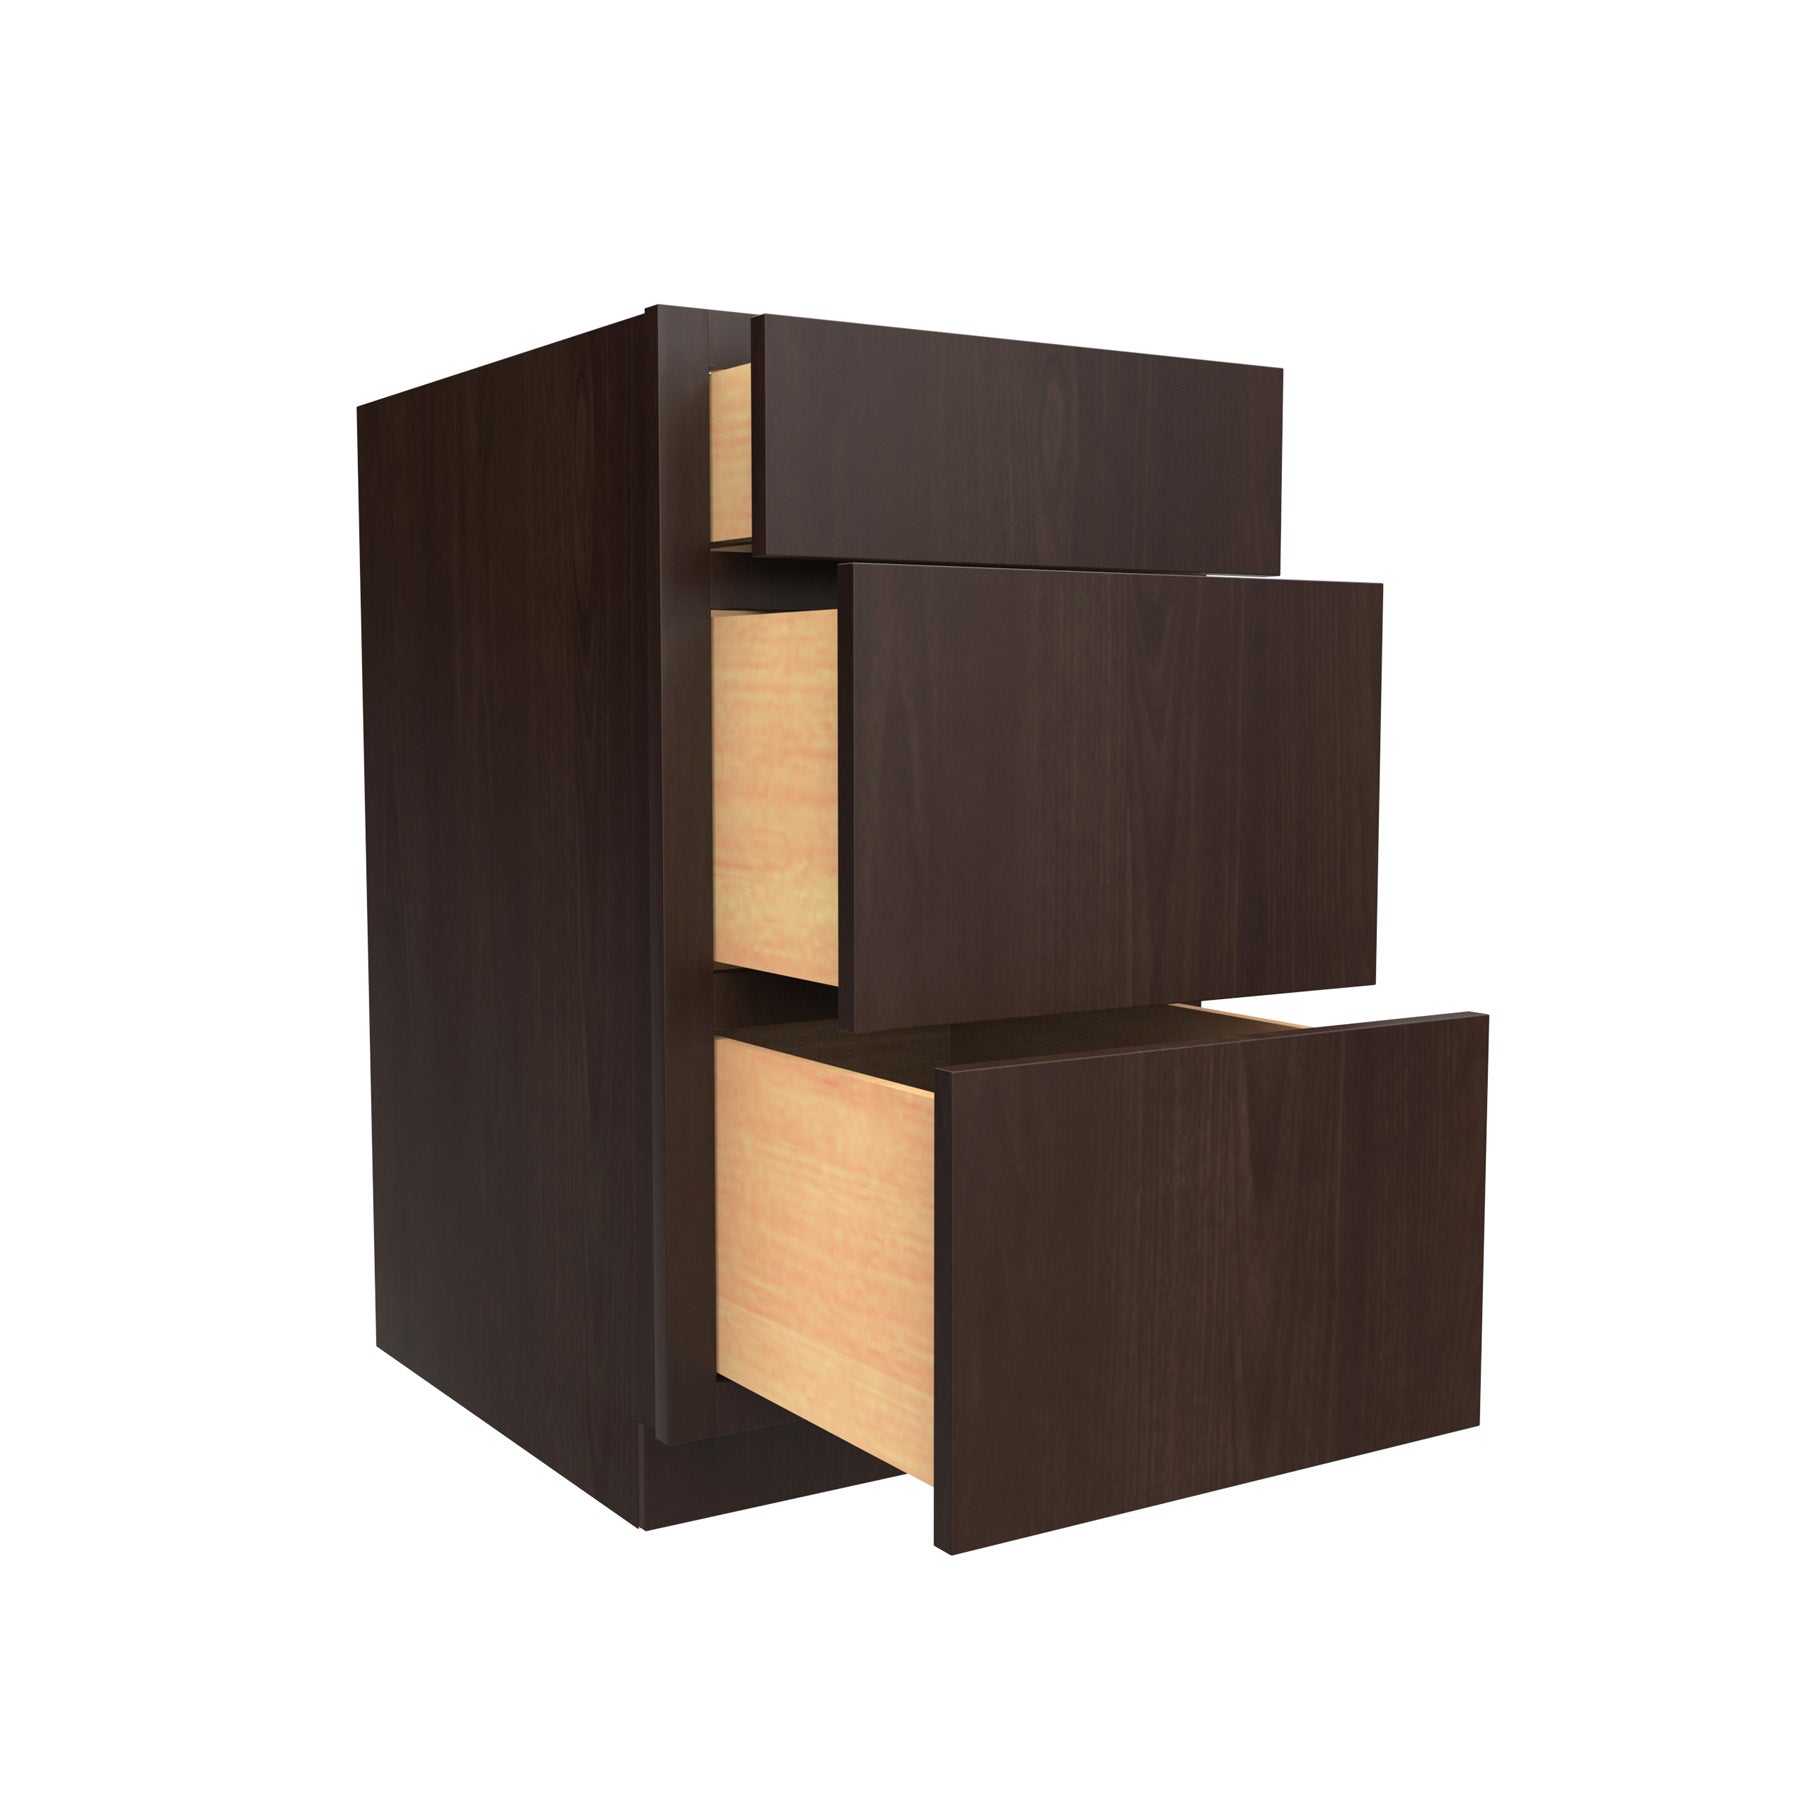 Drawer Base Cabinet, Handicap |18"W x 32.5"H x 24"D - RTA Luxor Espresso